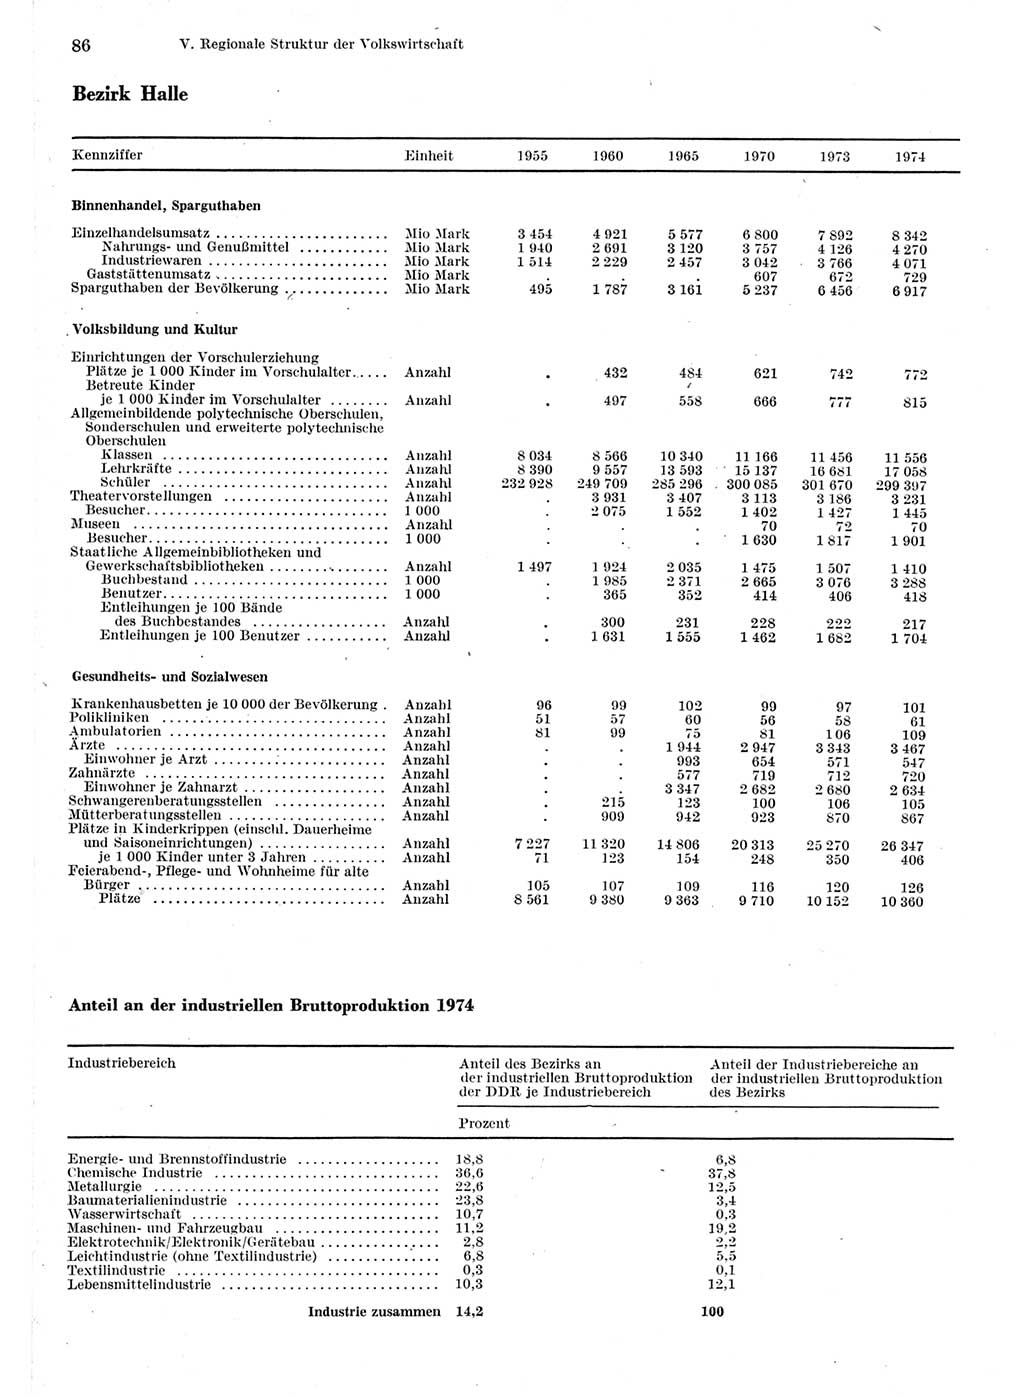 Statistisches Jahrbuch der Deutschen Demokratischen Republik (DDR) 1975, Seite 86 (Stat. Jb. DDR 1975, S. 86)